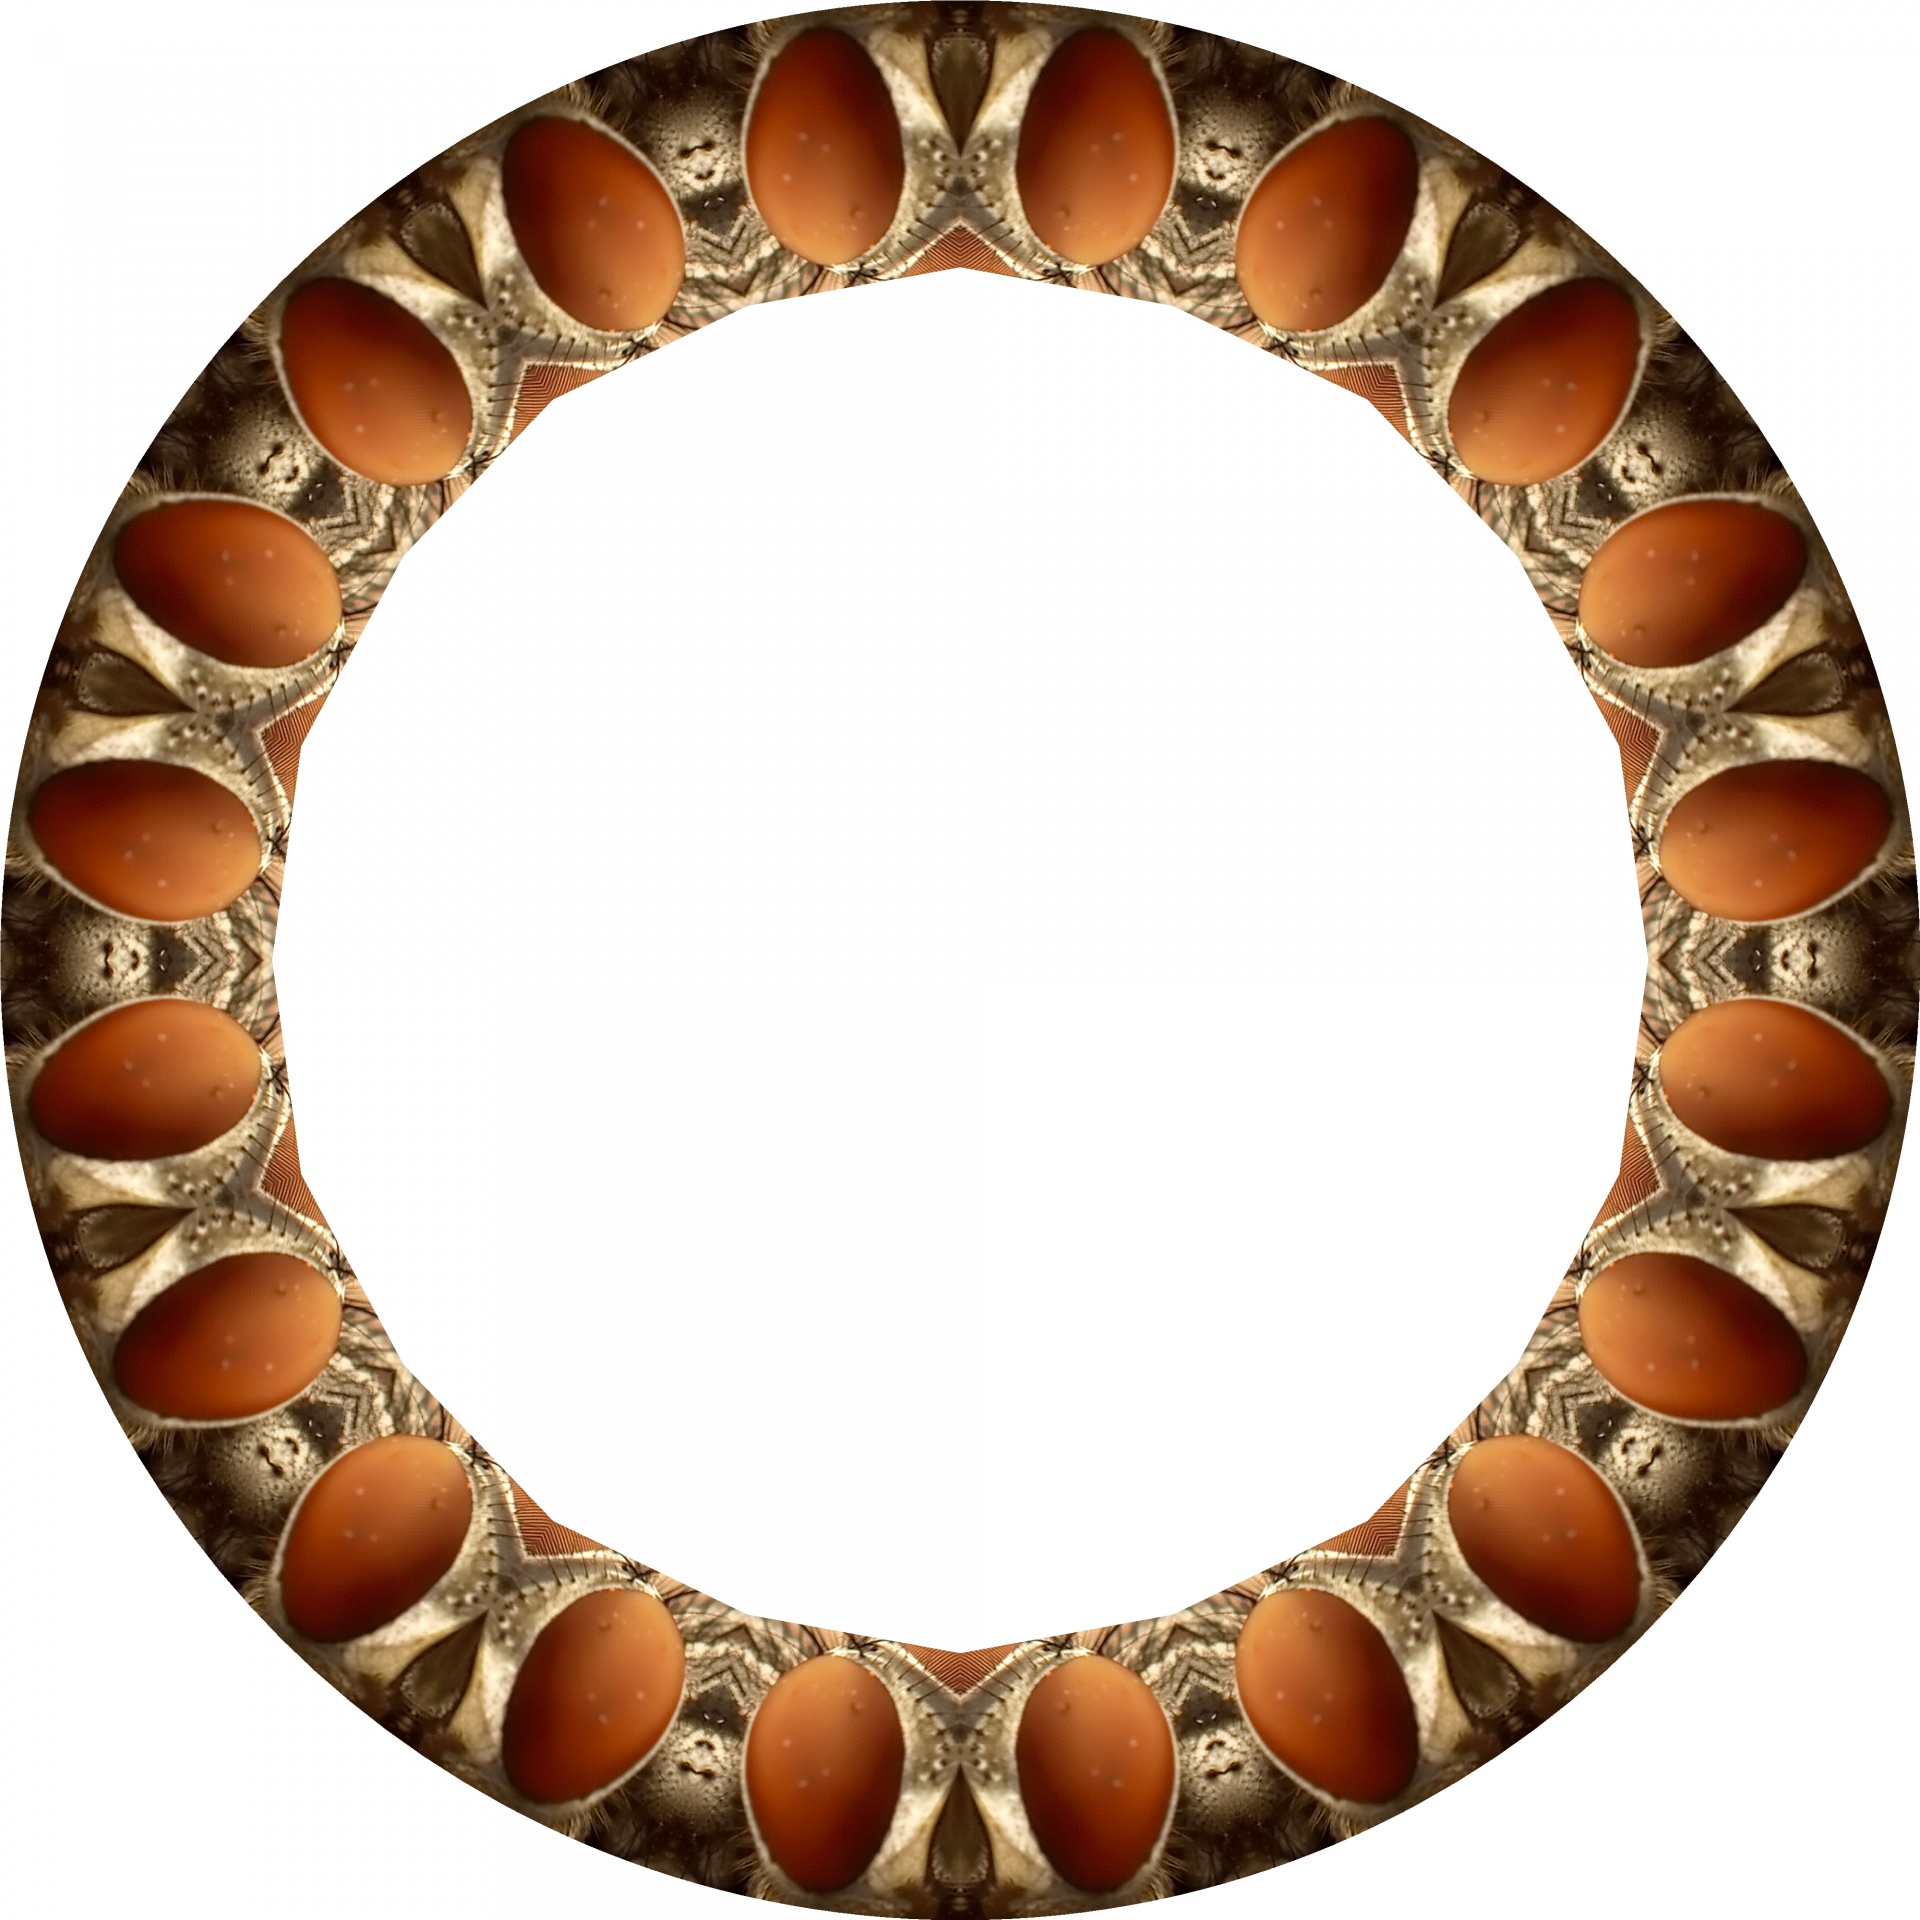 ring shape kaleidoscope free photo